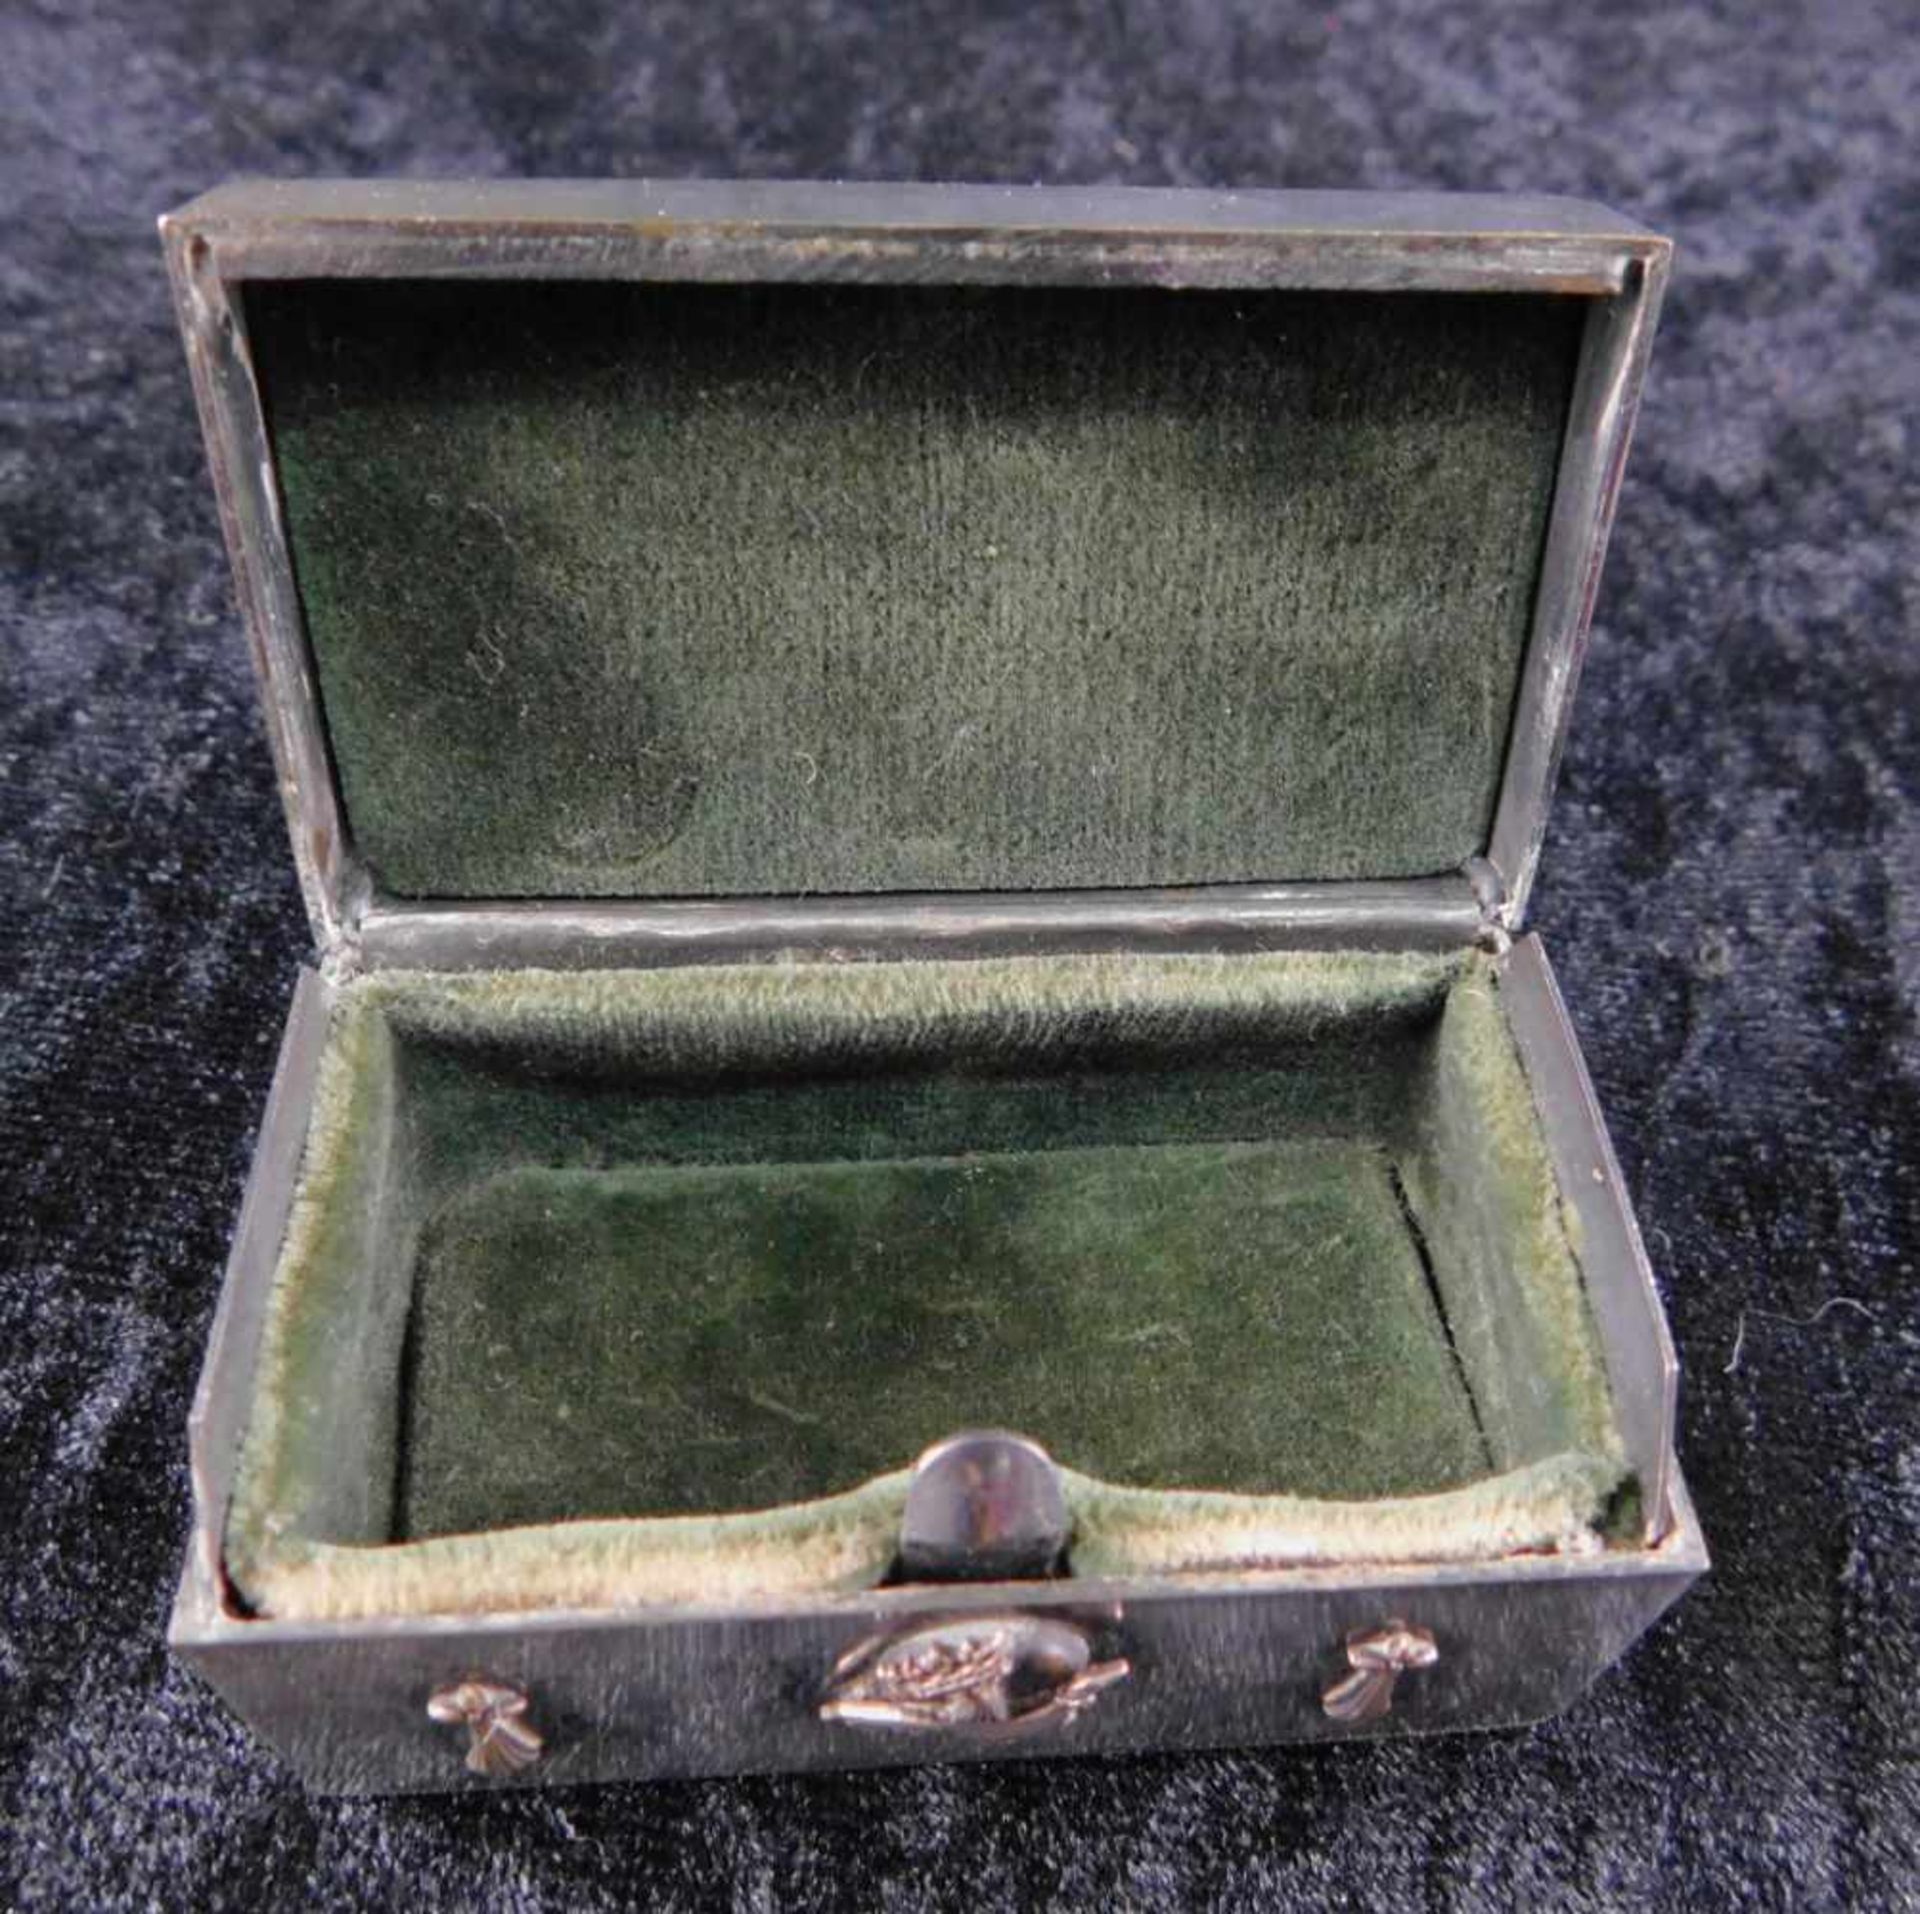 zurückgezogen / withdrawn---Kleine Dose, Silber, China, 1. H. 20. Jhdt., 109 g, Höhe 3,5 cm, - Image 2 of 3